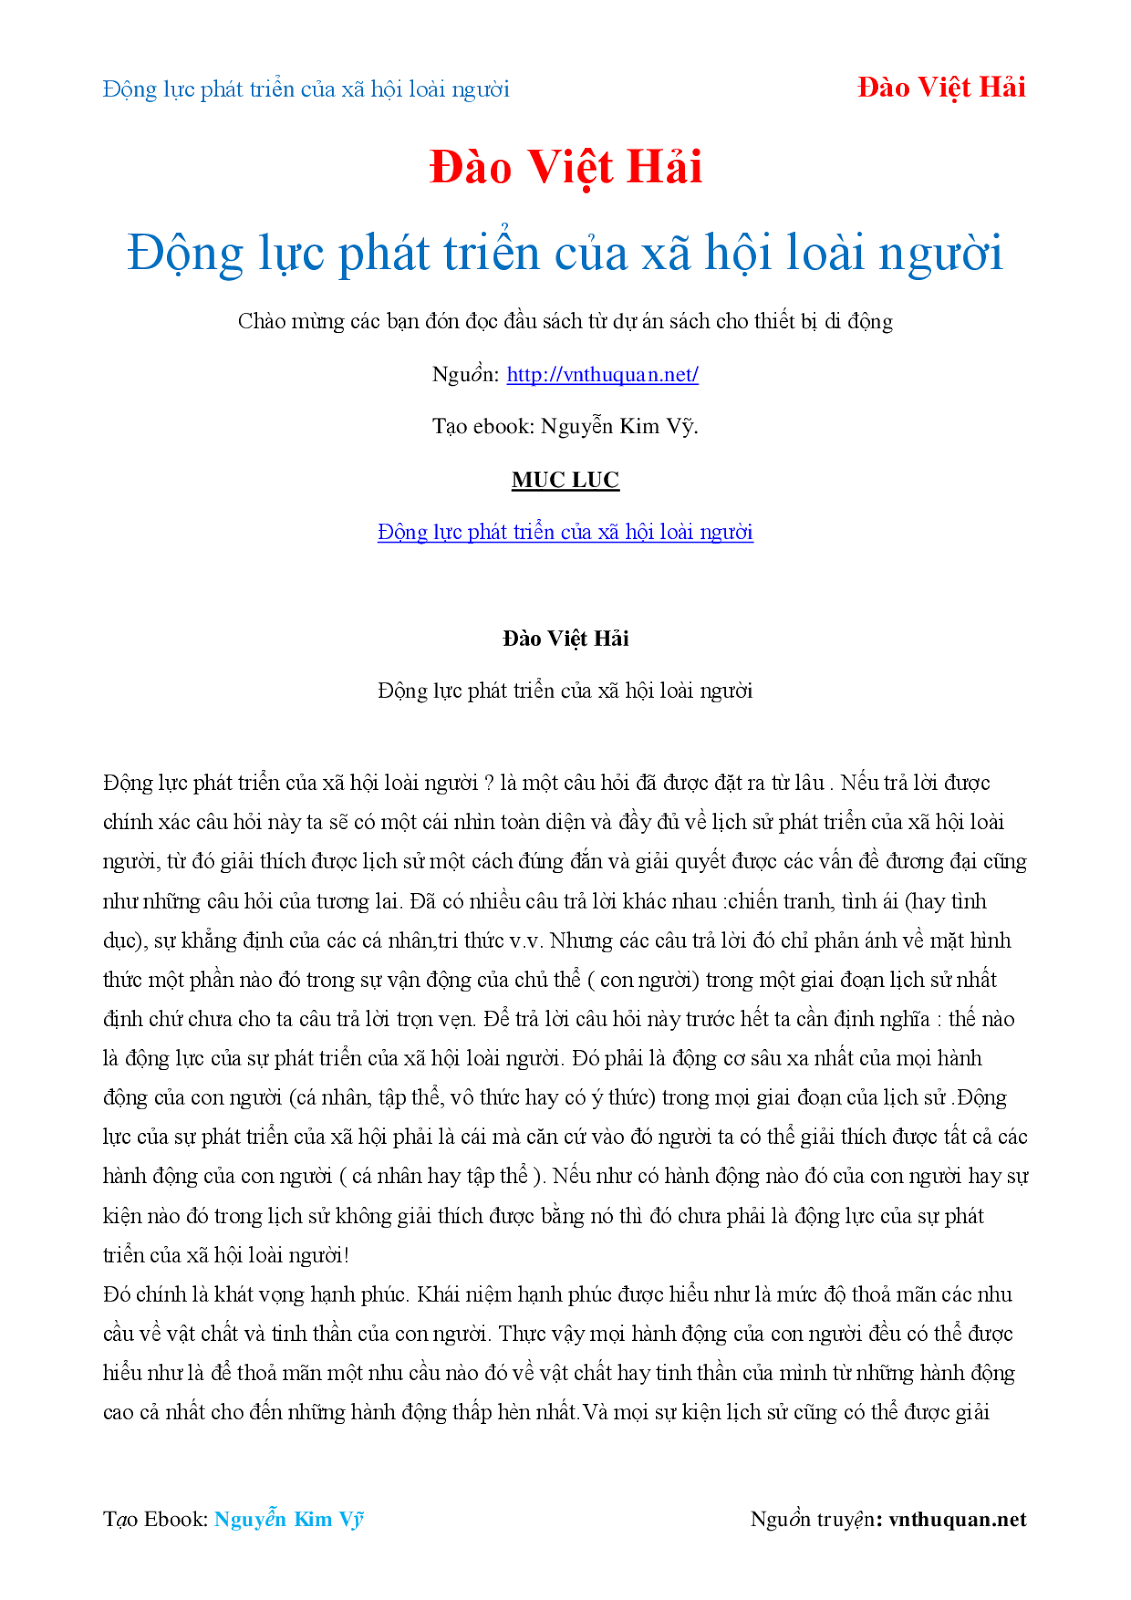 Tải sách: Động lực phát triển của xã hội loài người - Đào Việt Hải